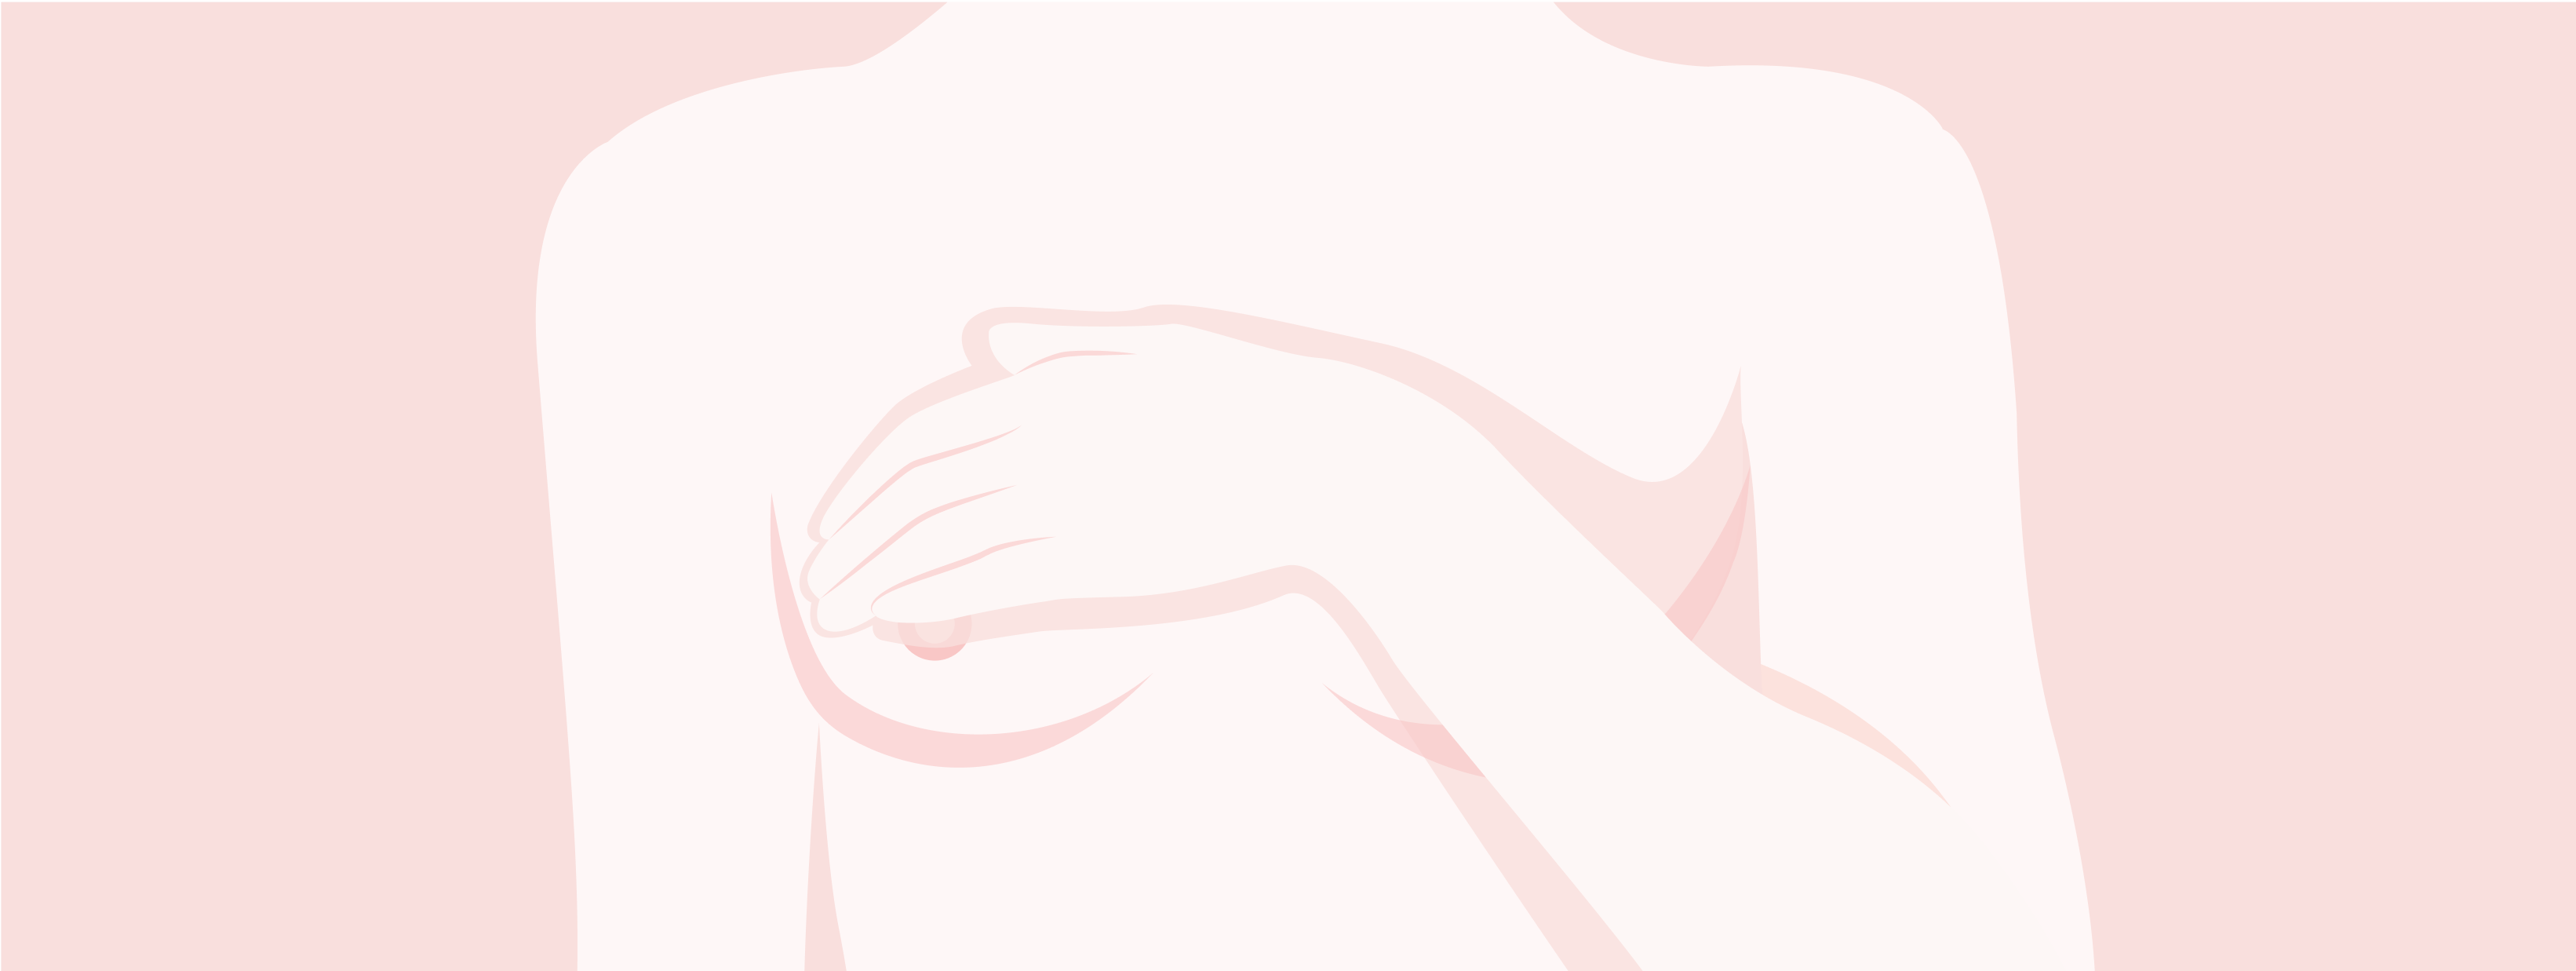 Illustration de la partie supérieure du corps d'une femme. Femme portant une main à sa poitrine.